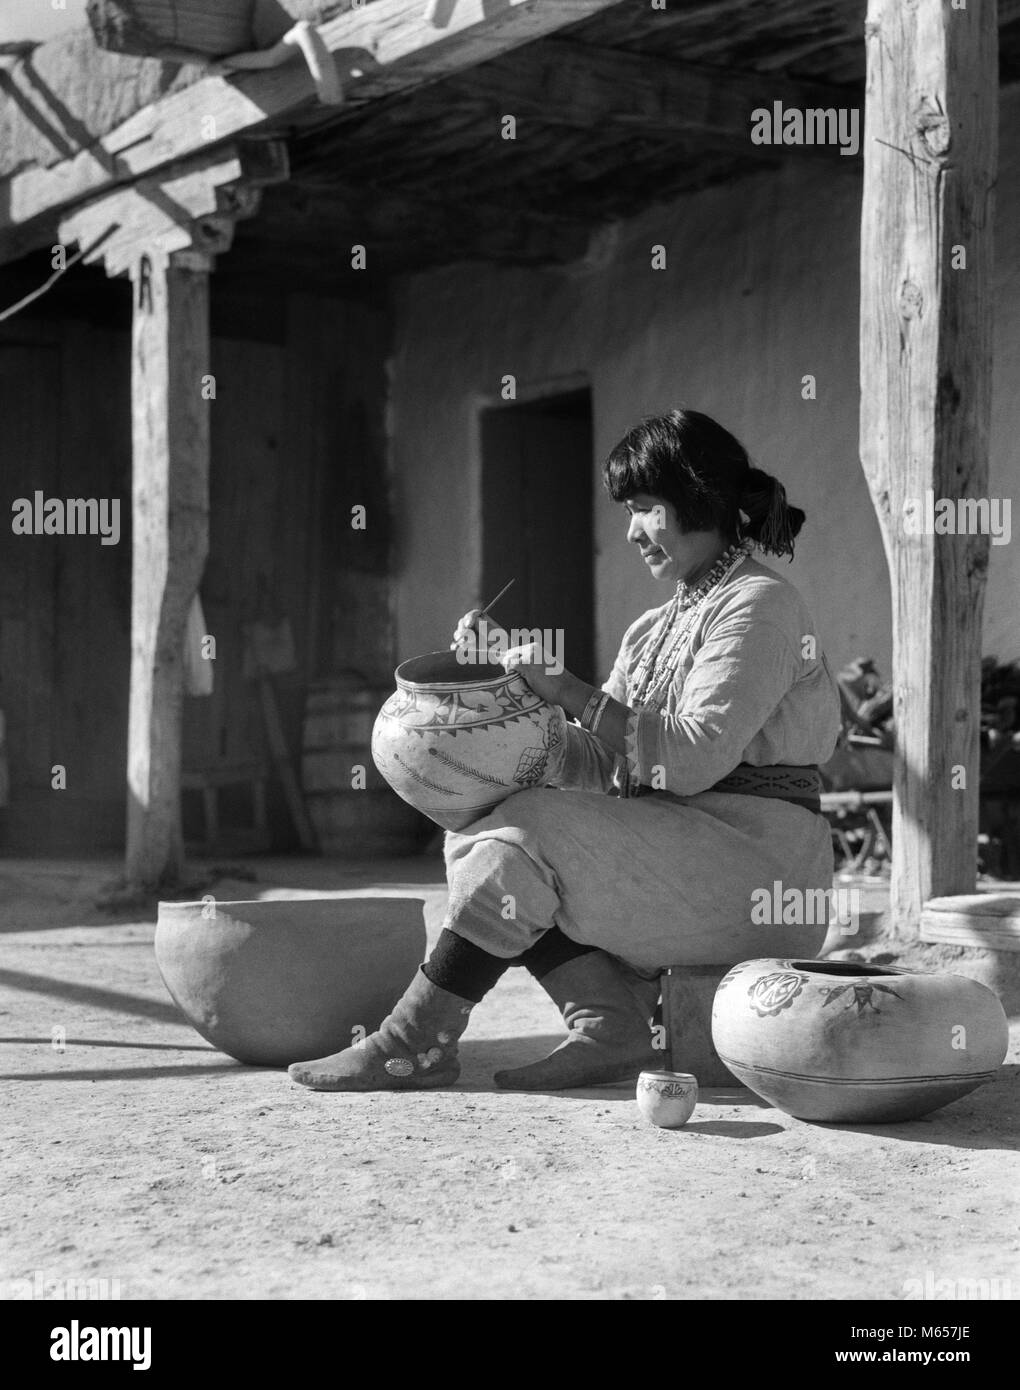 1930 Native American Indian WOMAN DECORATING POTTERY COCHITI PUEBLO NOUVEAU MEXIQUE USA - i1493 HAR001 HARS 25-30 ans 30-35 ans 35-40 ans succès nord-américain de l'autorité compétence Créativité IMAGINATION FORCE FIERTÉ NATIVE AMERICAN SOUTHWEST COCHITI PUEBLO MID-ADULT MID-ADULT WOMAN AMÉRICAINS AUTOCHTONES NOUVEAU MEXIQUE PRECISION YOUNG ADULT WOMAN B&W NOIR ET BLANC OUVRIER PROFESSIONS AUTOCHTONES PERSONNES POTTER LE SUD-OUEST DE L'ANCIENNE Banque D'Images